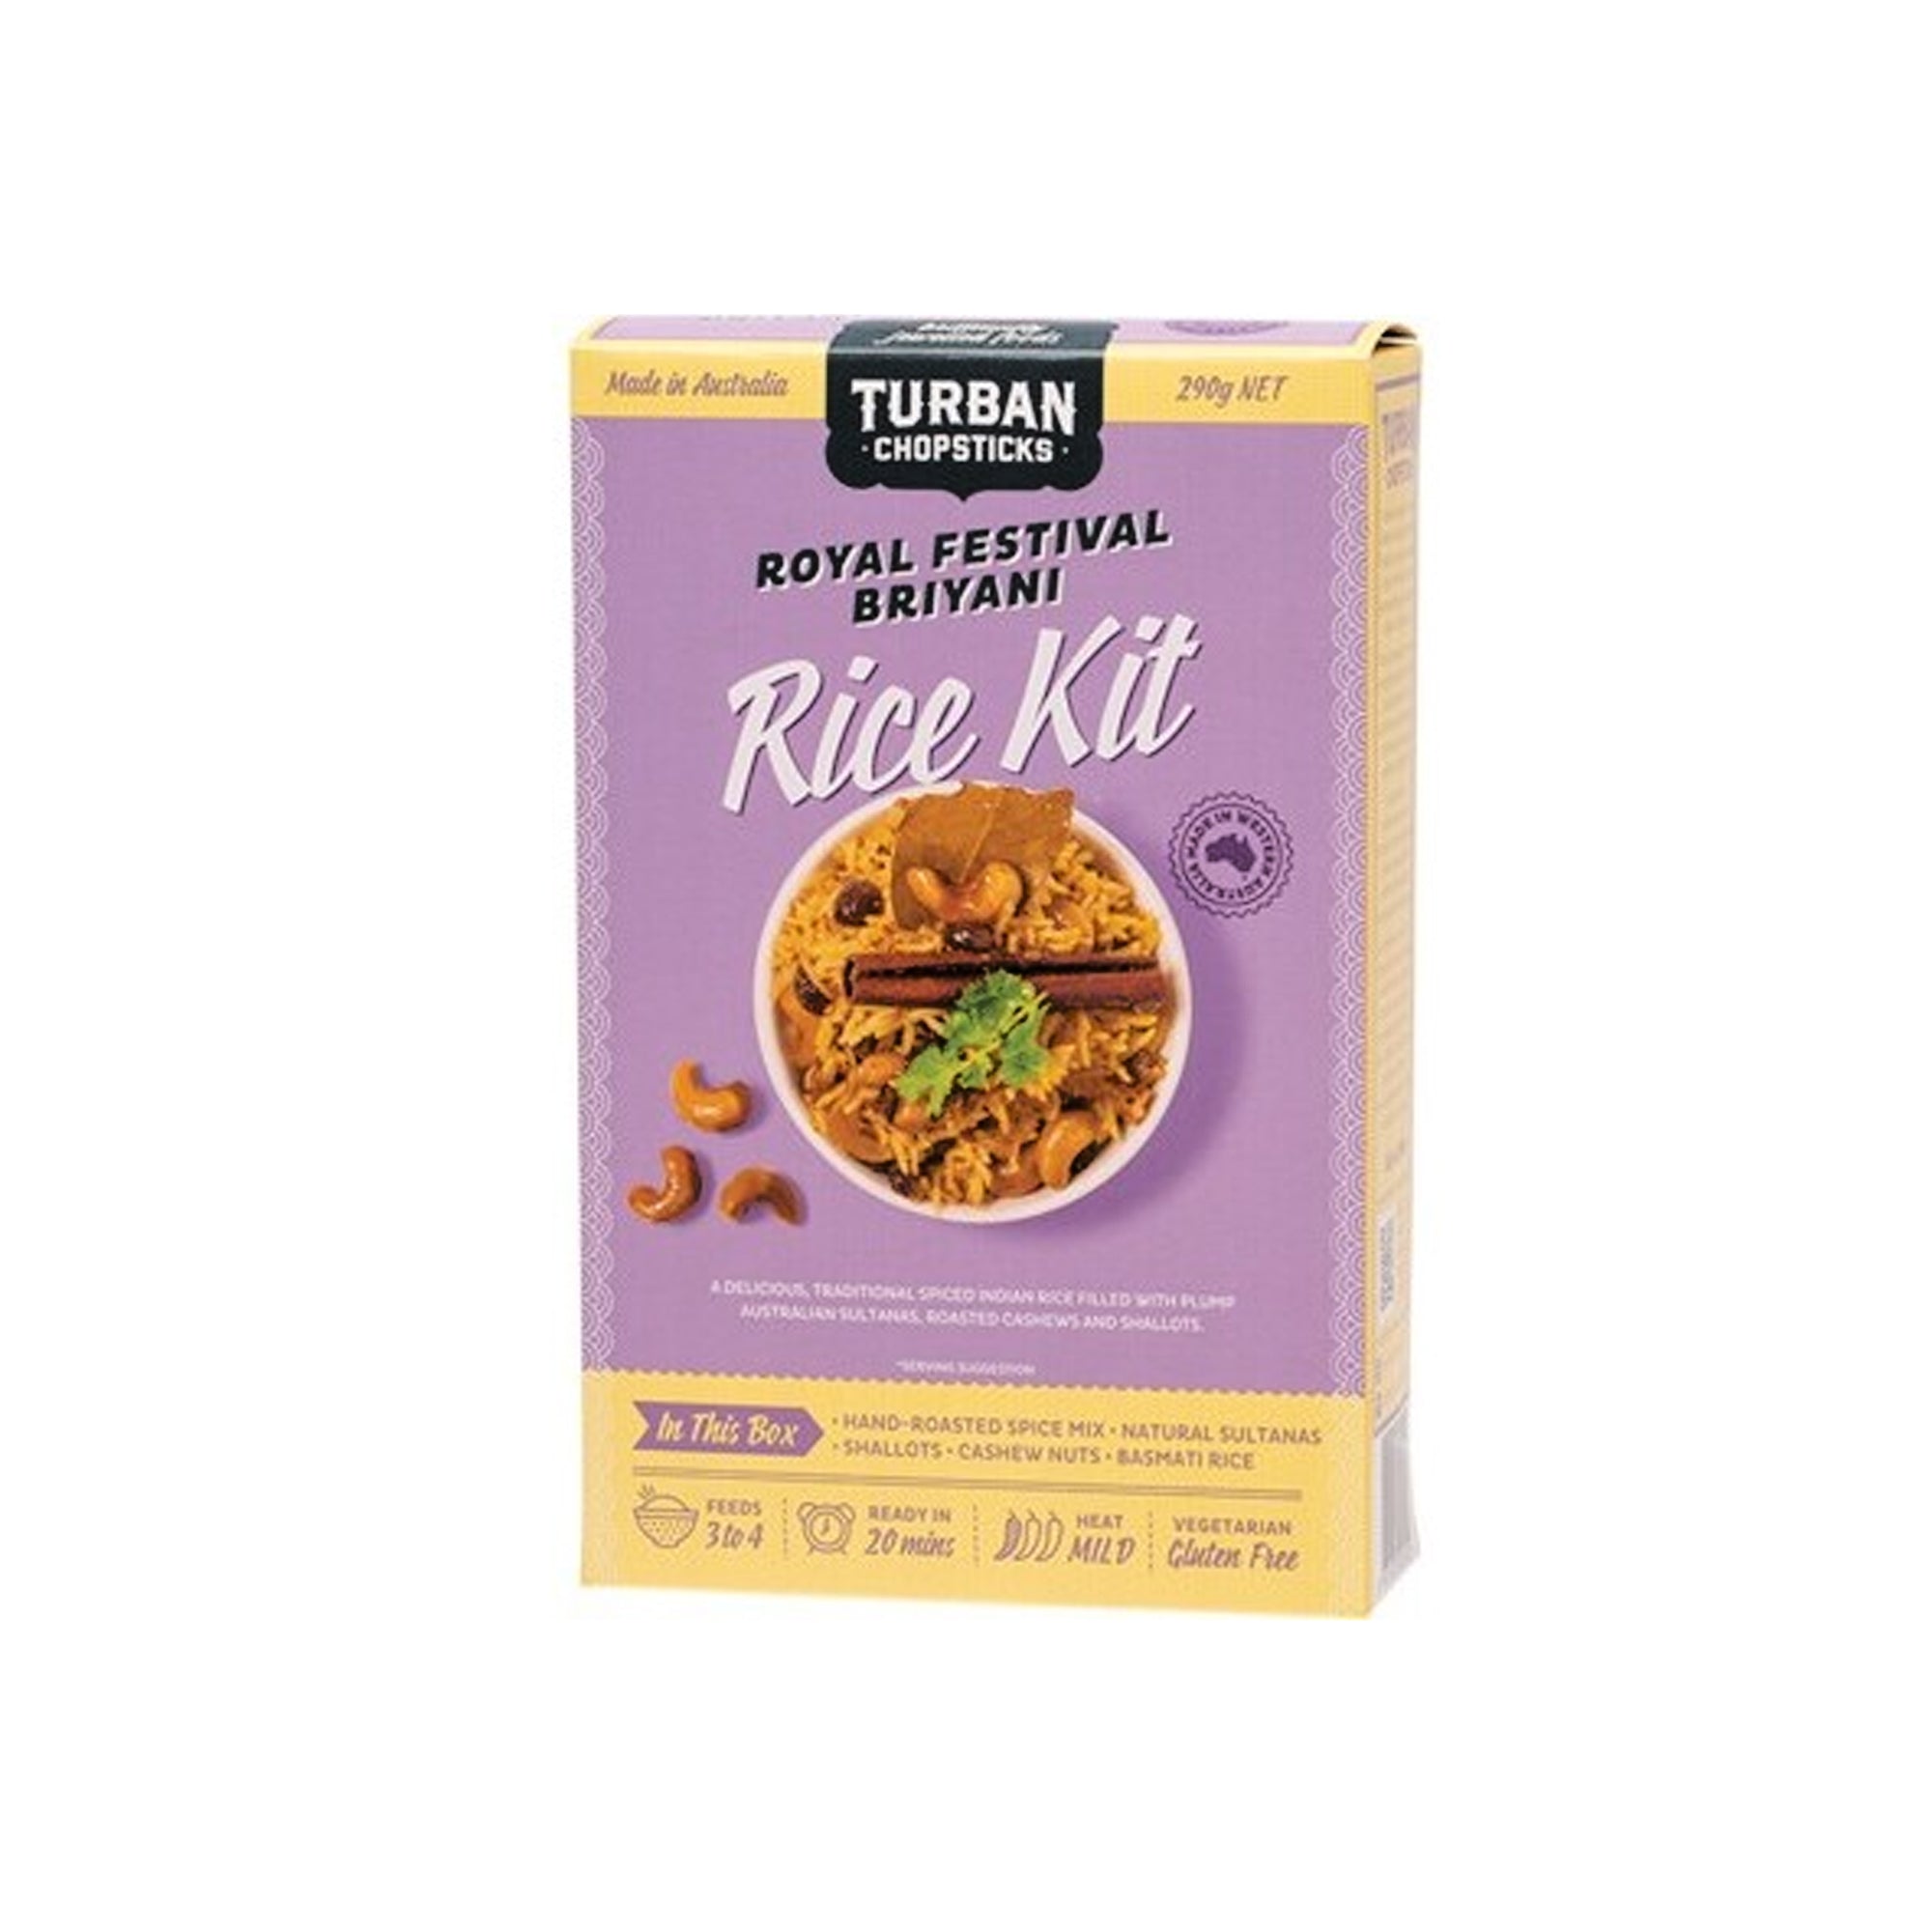 Turban Chopsticks - Rice Kit - Briyani 290g